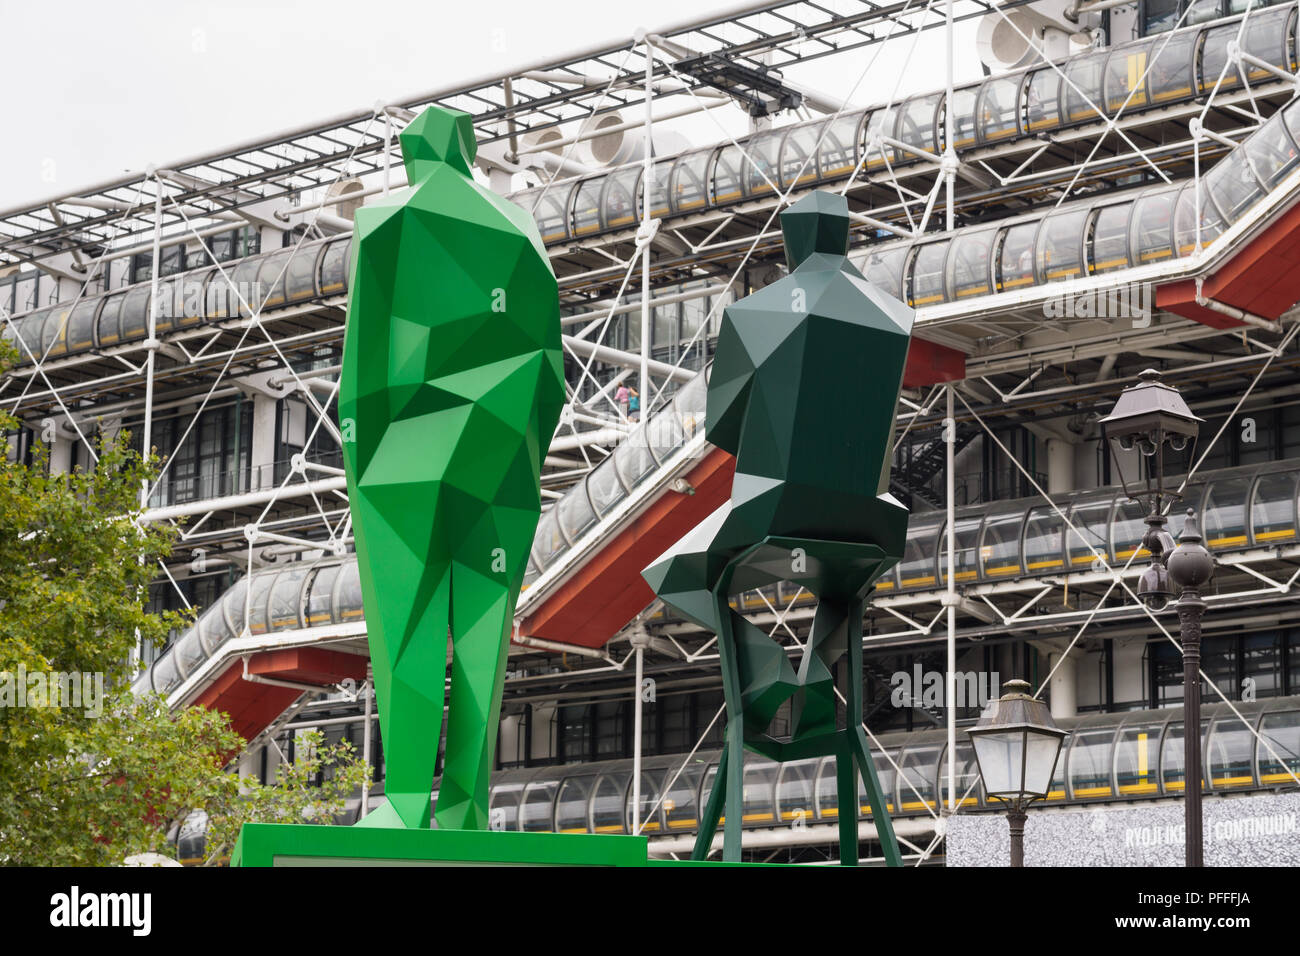 Beaubourg Paris Skulpturen - Skulpturen von Renzo Piano und Richard Rogers, Architekten des Centre Pompidou in Paris, Frankreich. Stockfoto